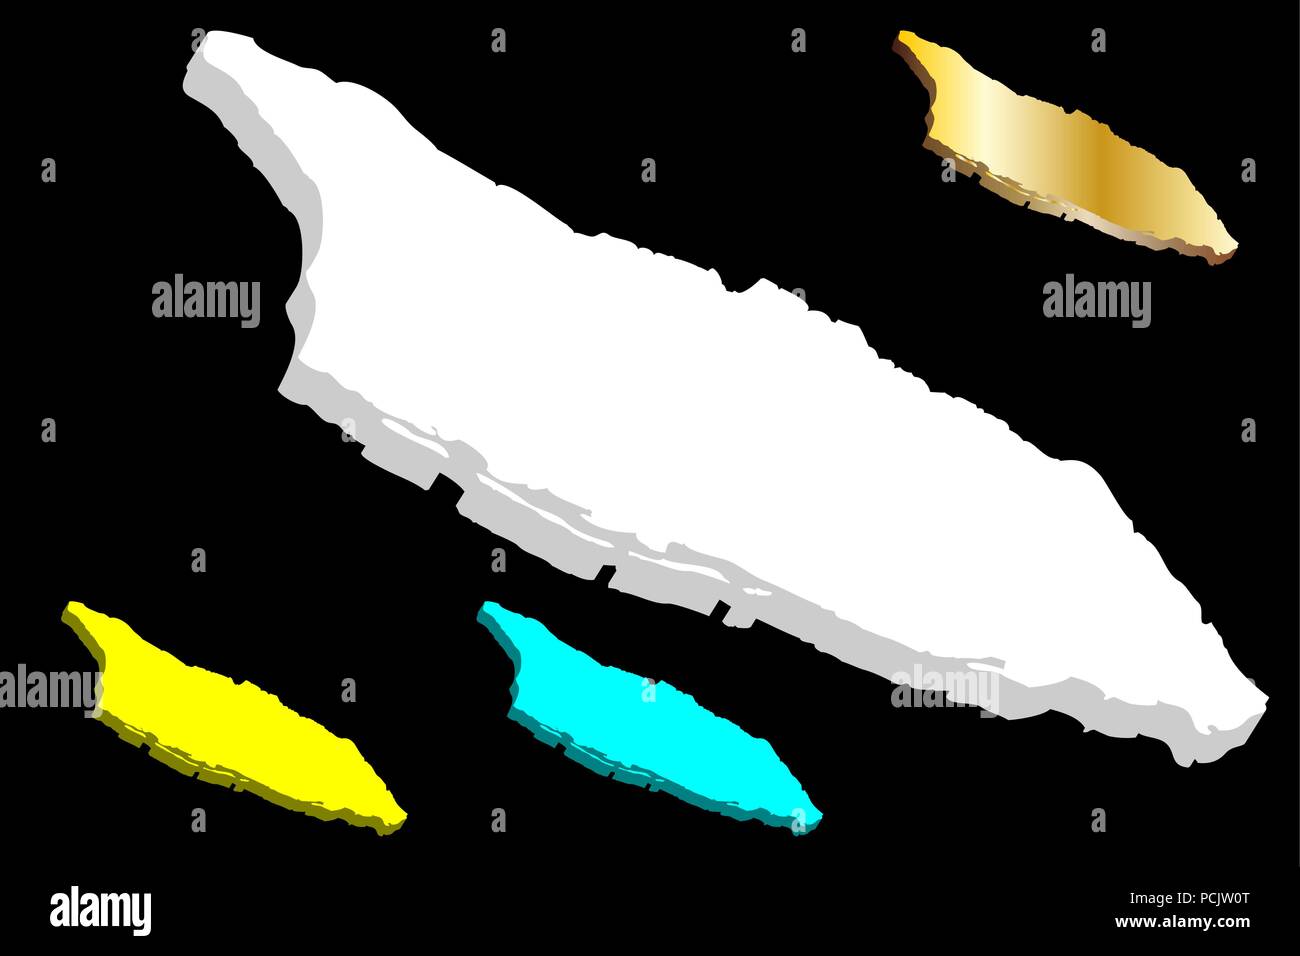 Carte 3D d'Aruba (île de Royaume des Pays-Bas) - blanc, jaune, bleu et or - vector illustration Illustration de Vecteur